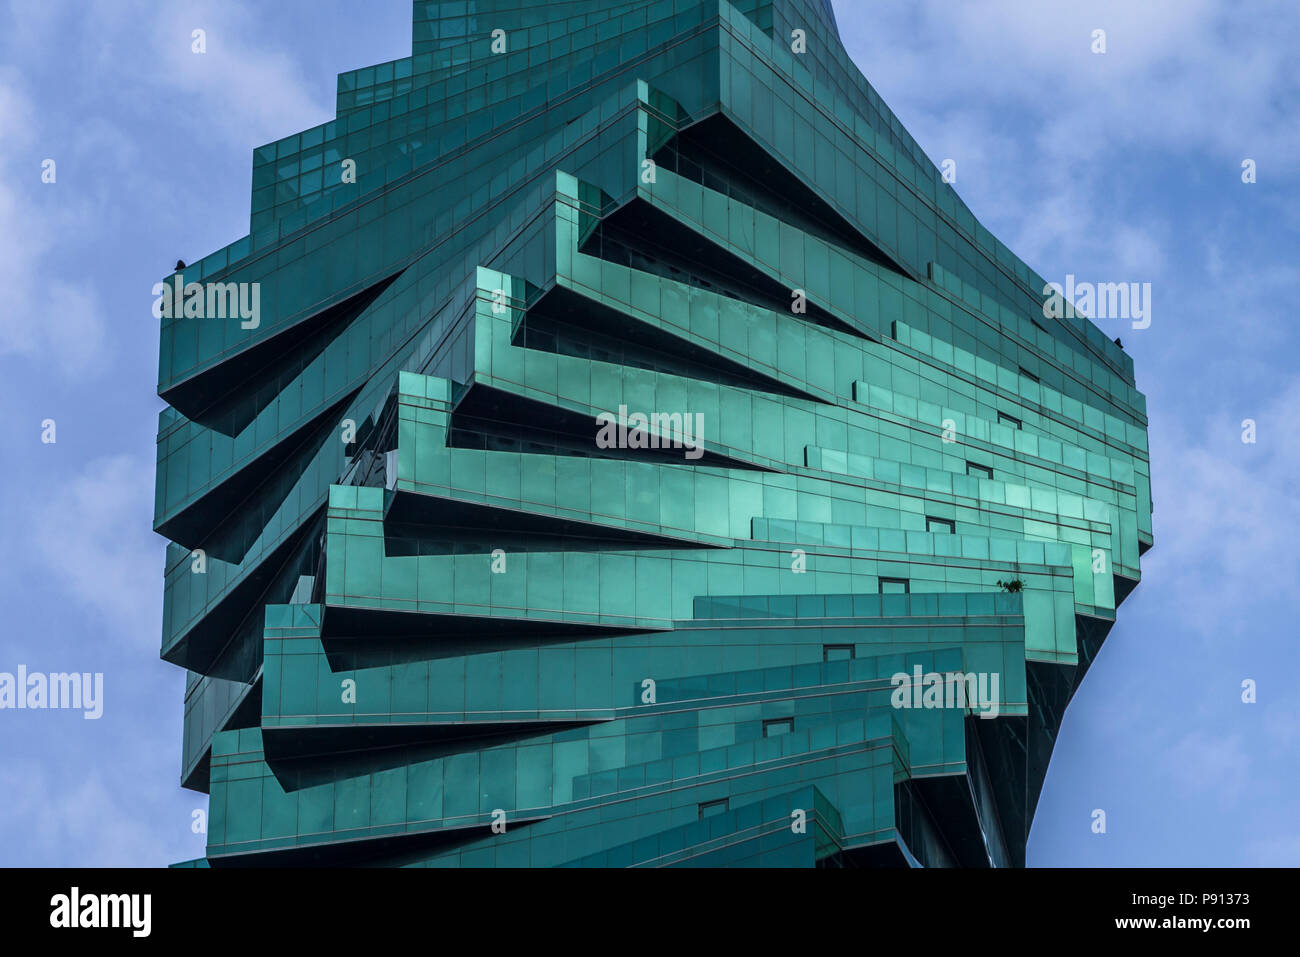 El Tornillo oficina comercial moderno diseño de Fachada de edificio de la Ciudad de Panamá Foto de stock